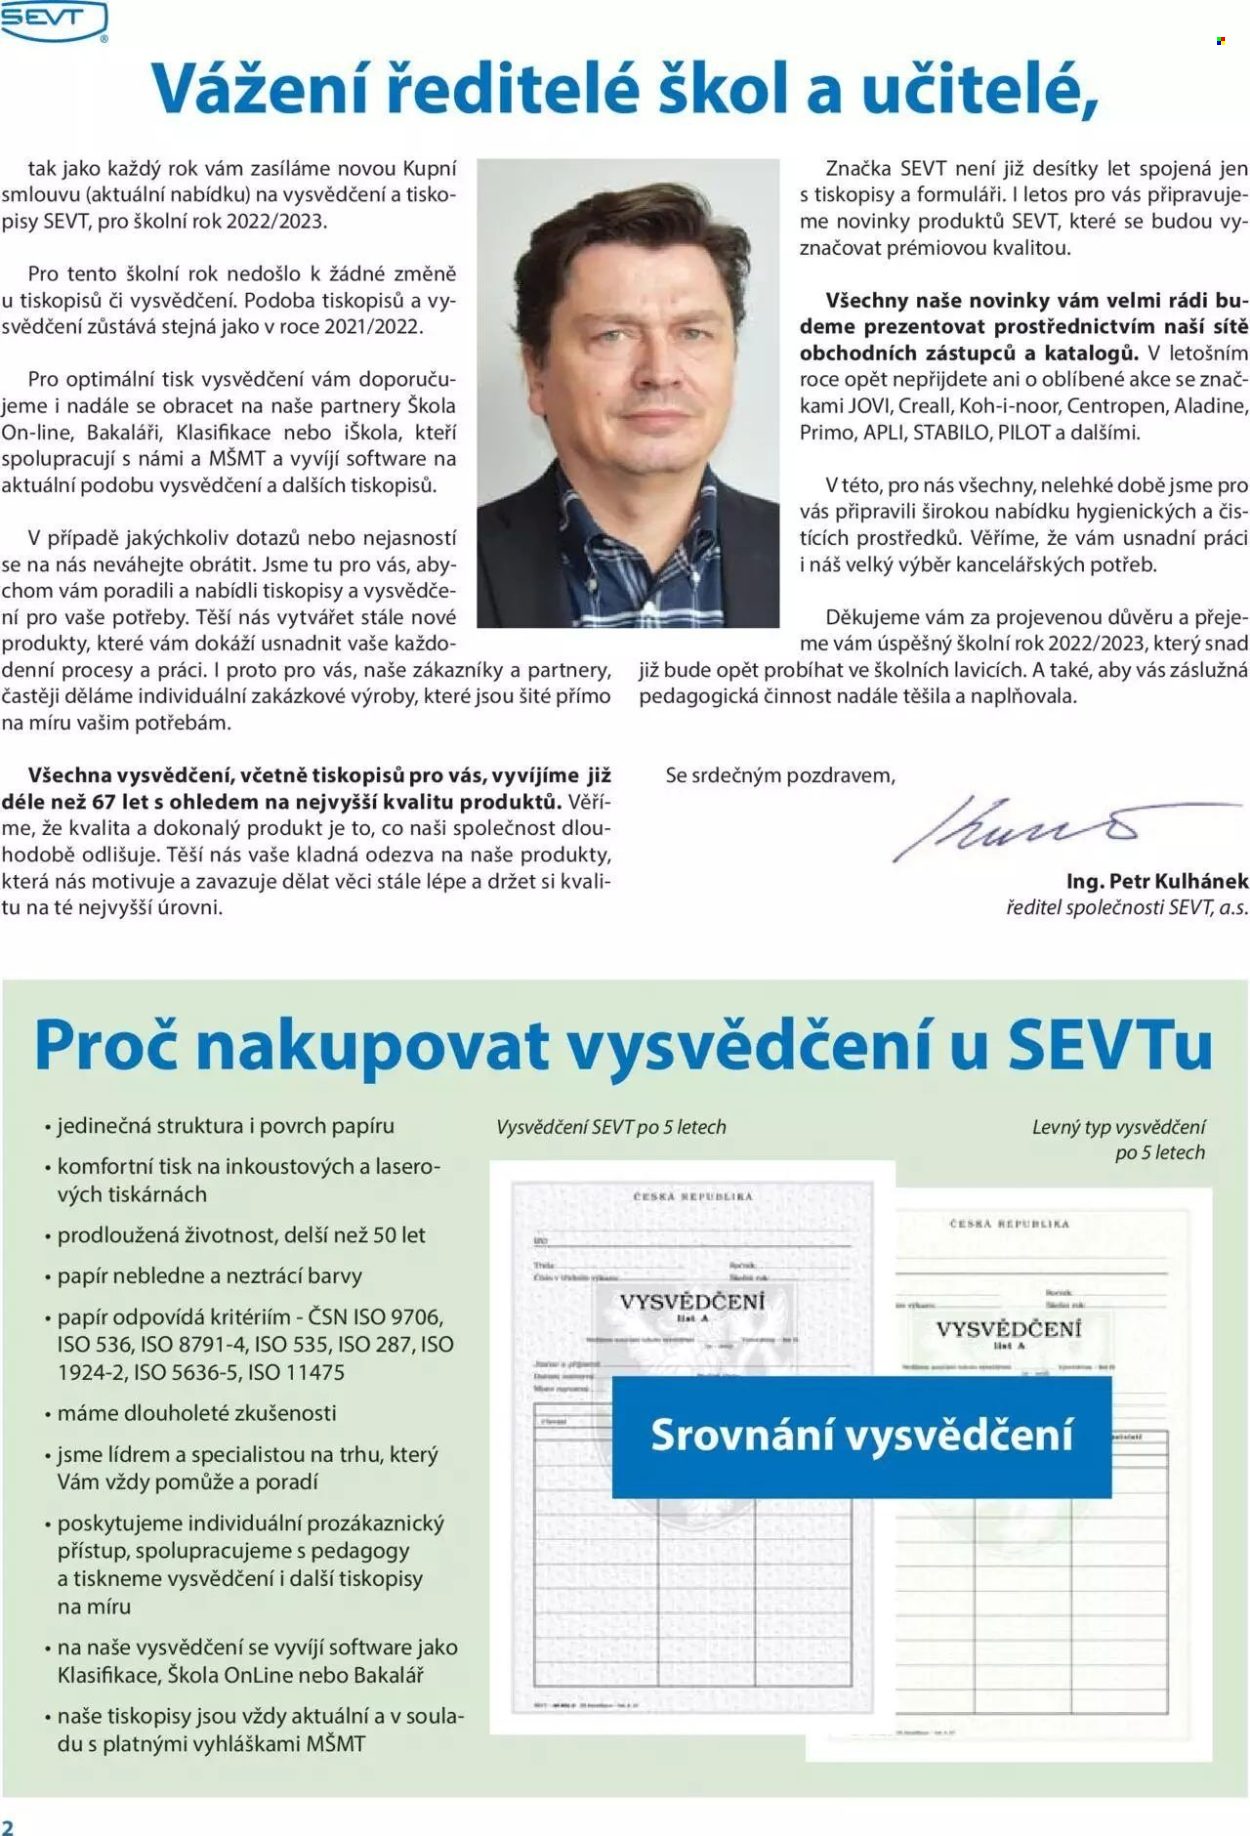 thumbnail - Leták SEVT - Produkty v akci - Pilot, Stabilo, tiskopis, Centropen, Koh-i-noor. Strana 2.